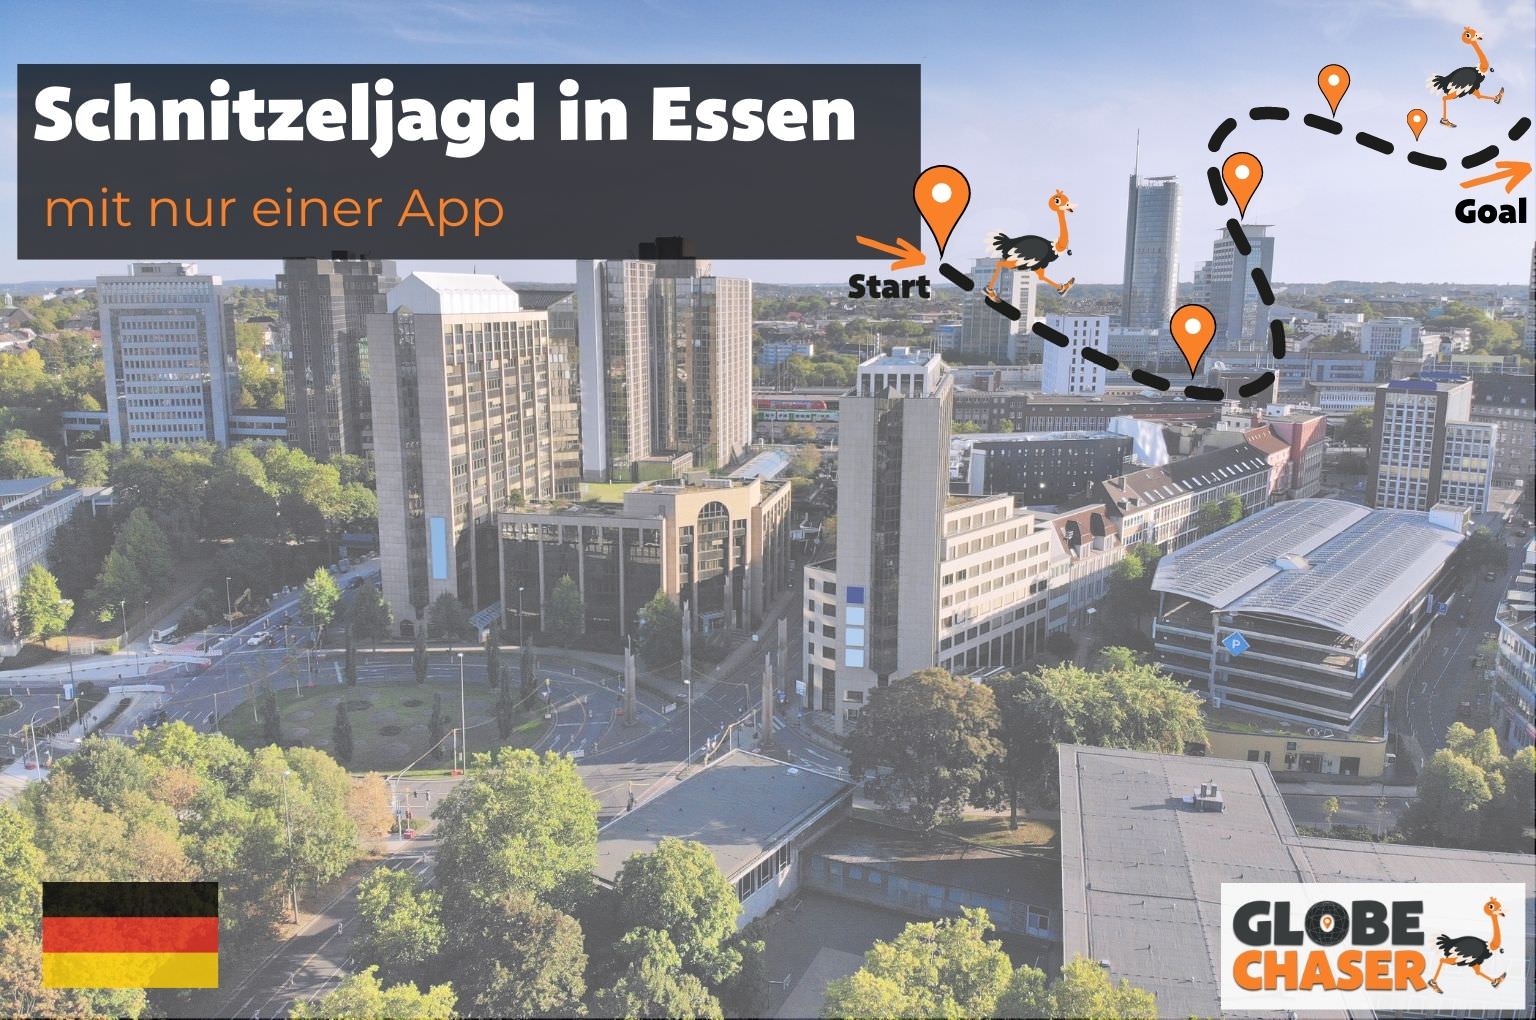 Schnitzeljagd in Essen mit App - Globe Chaser Erlebnisse Deutschland